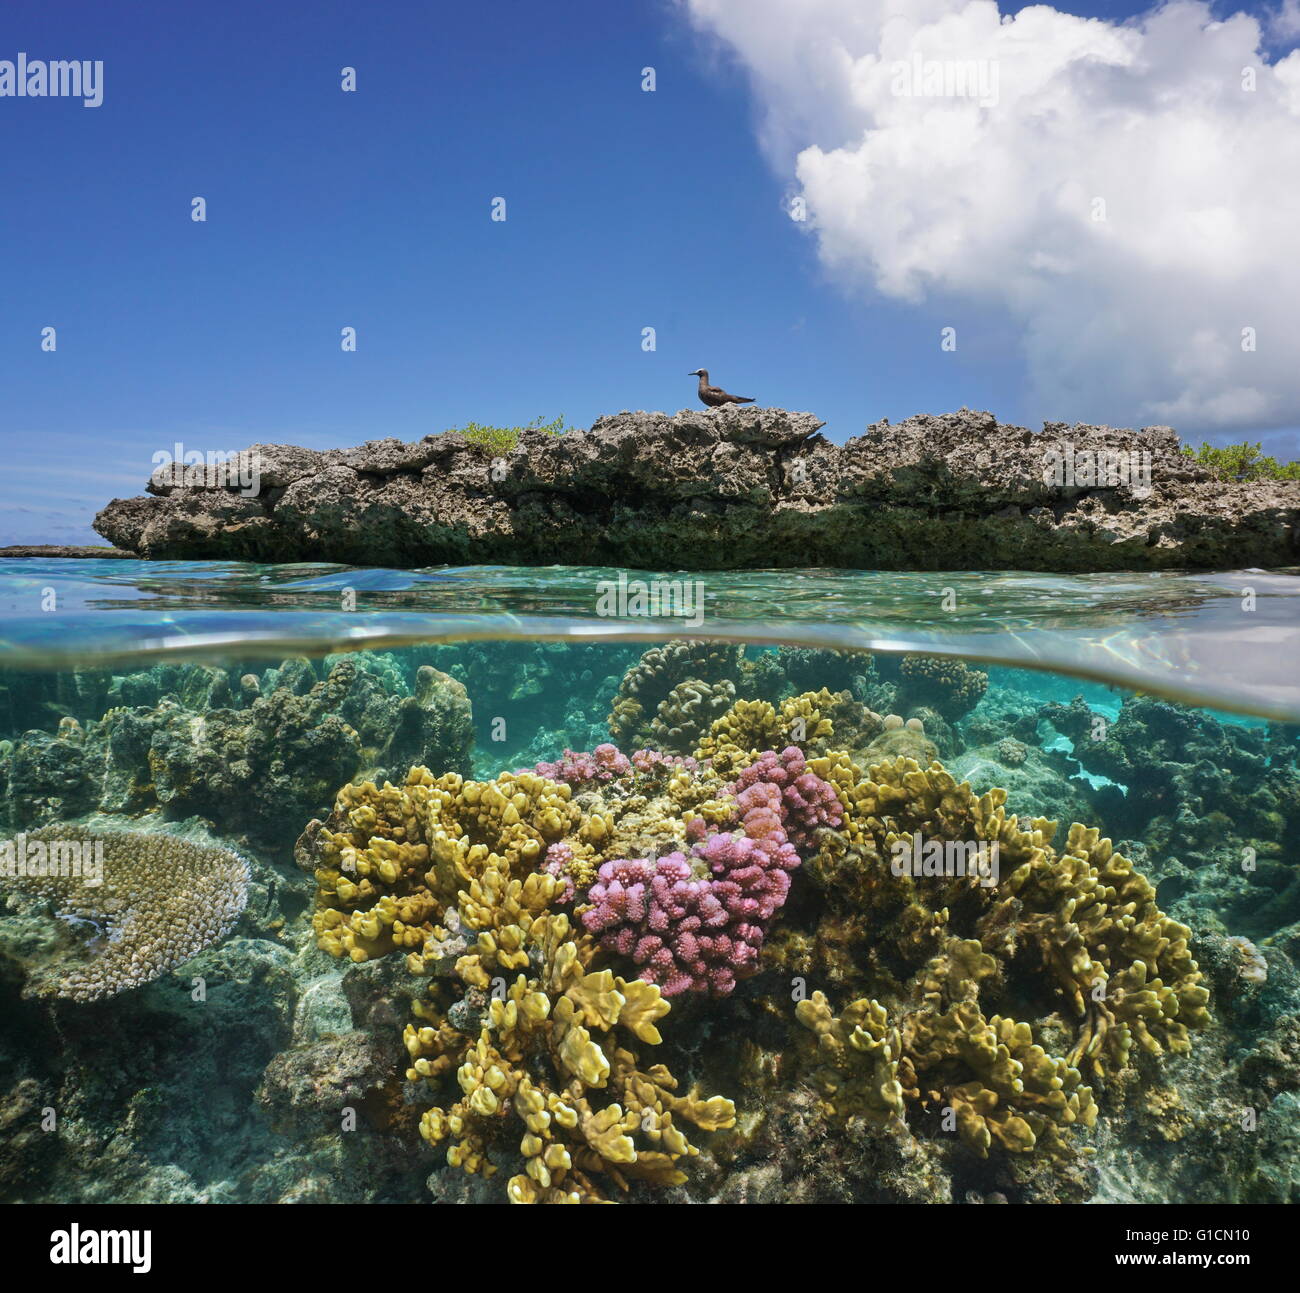 Au-dessus et au-dessous de la surface de l'eau, les coraux sous l'eau et un îlot de corail avec un oiseau de mer, océan Pacifique, Polynésie Française Banque D'Images